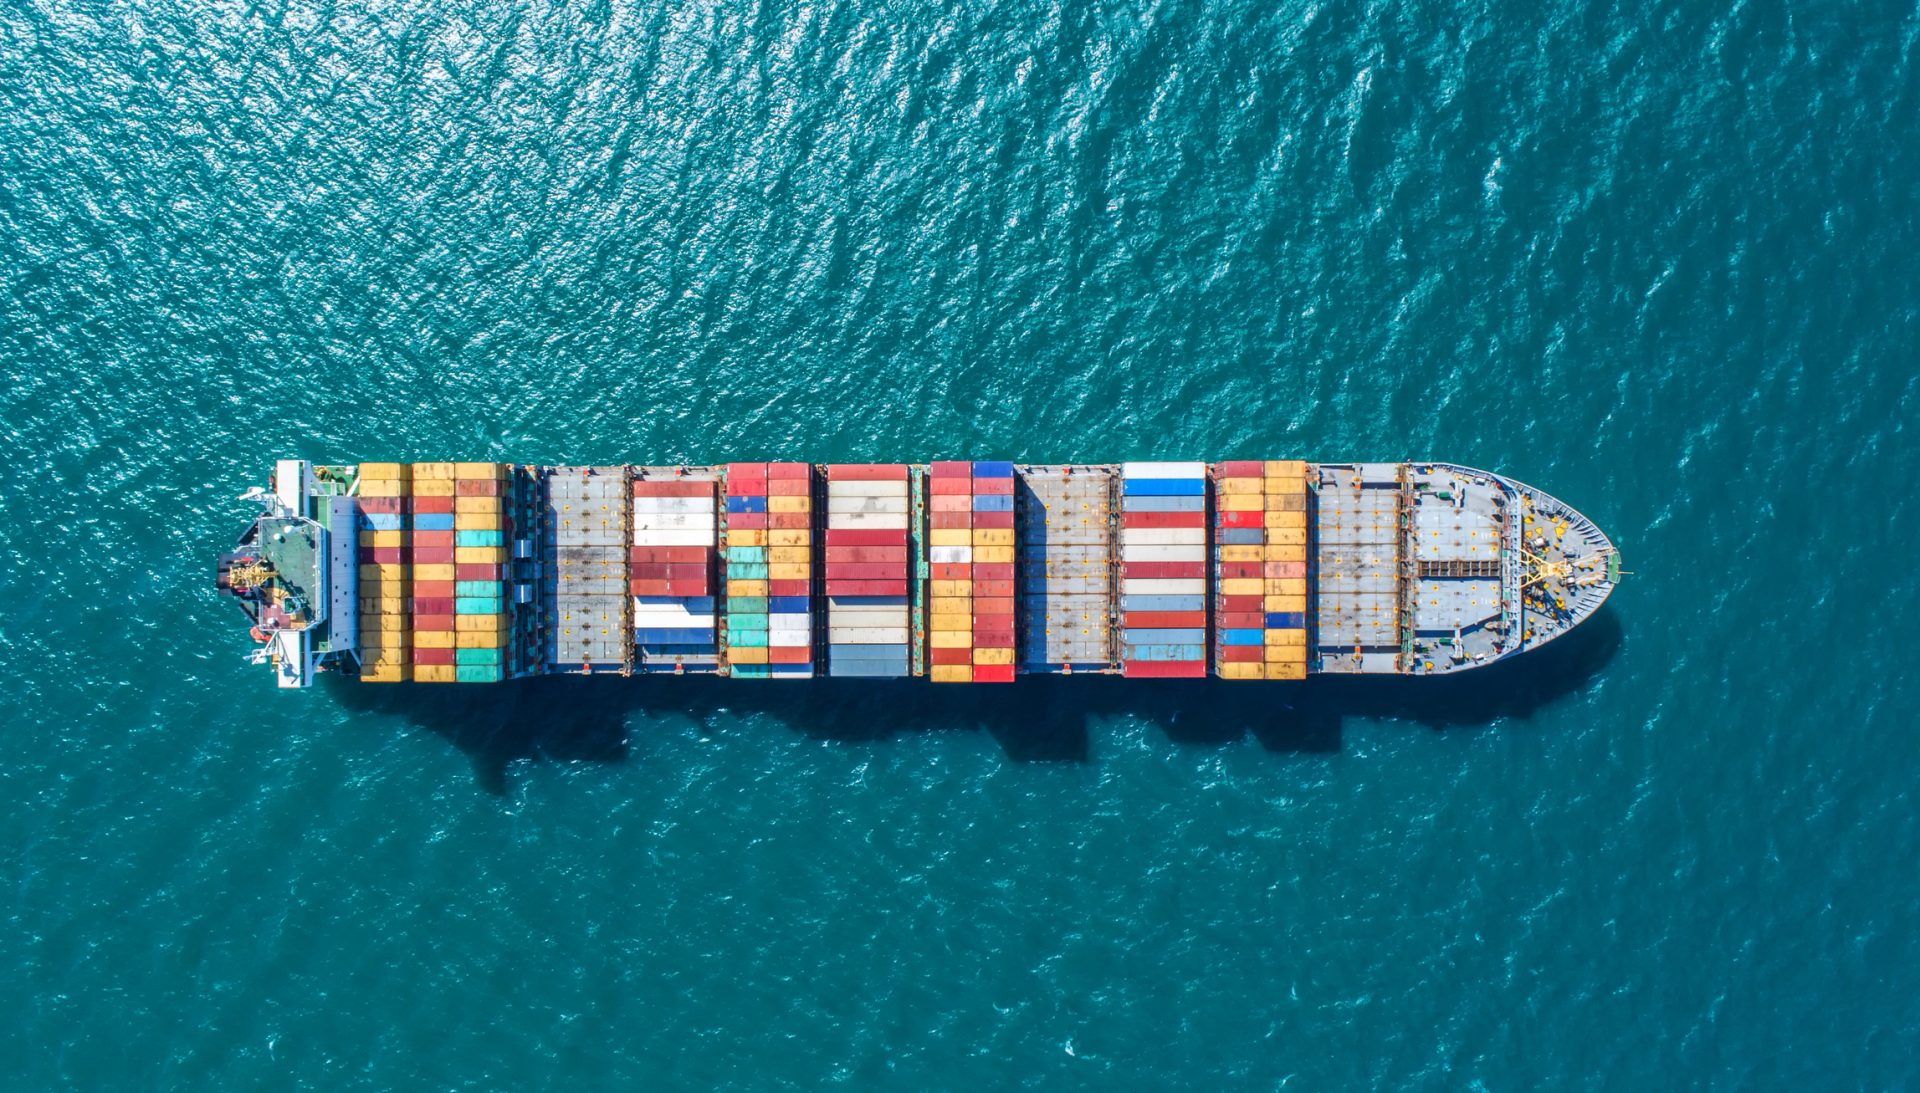 سفن نقل البضائع تسهم بحصة كبيرة في انبعاثات الشحن البحري